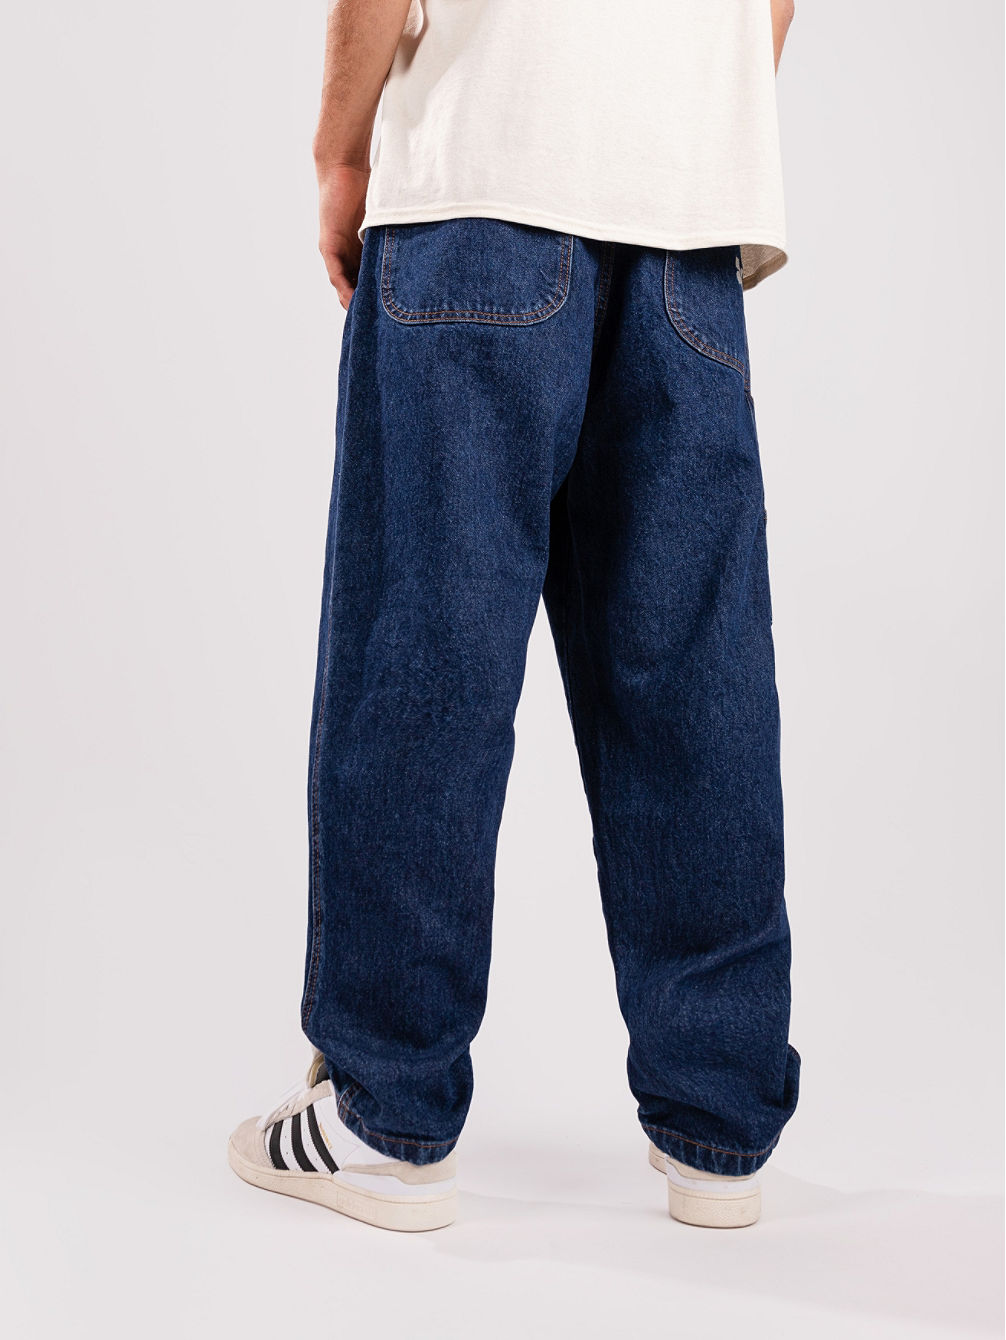 Clipper Denim Jeans